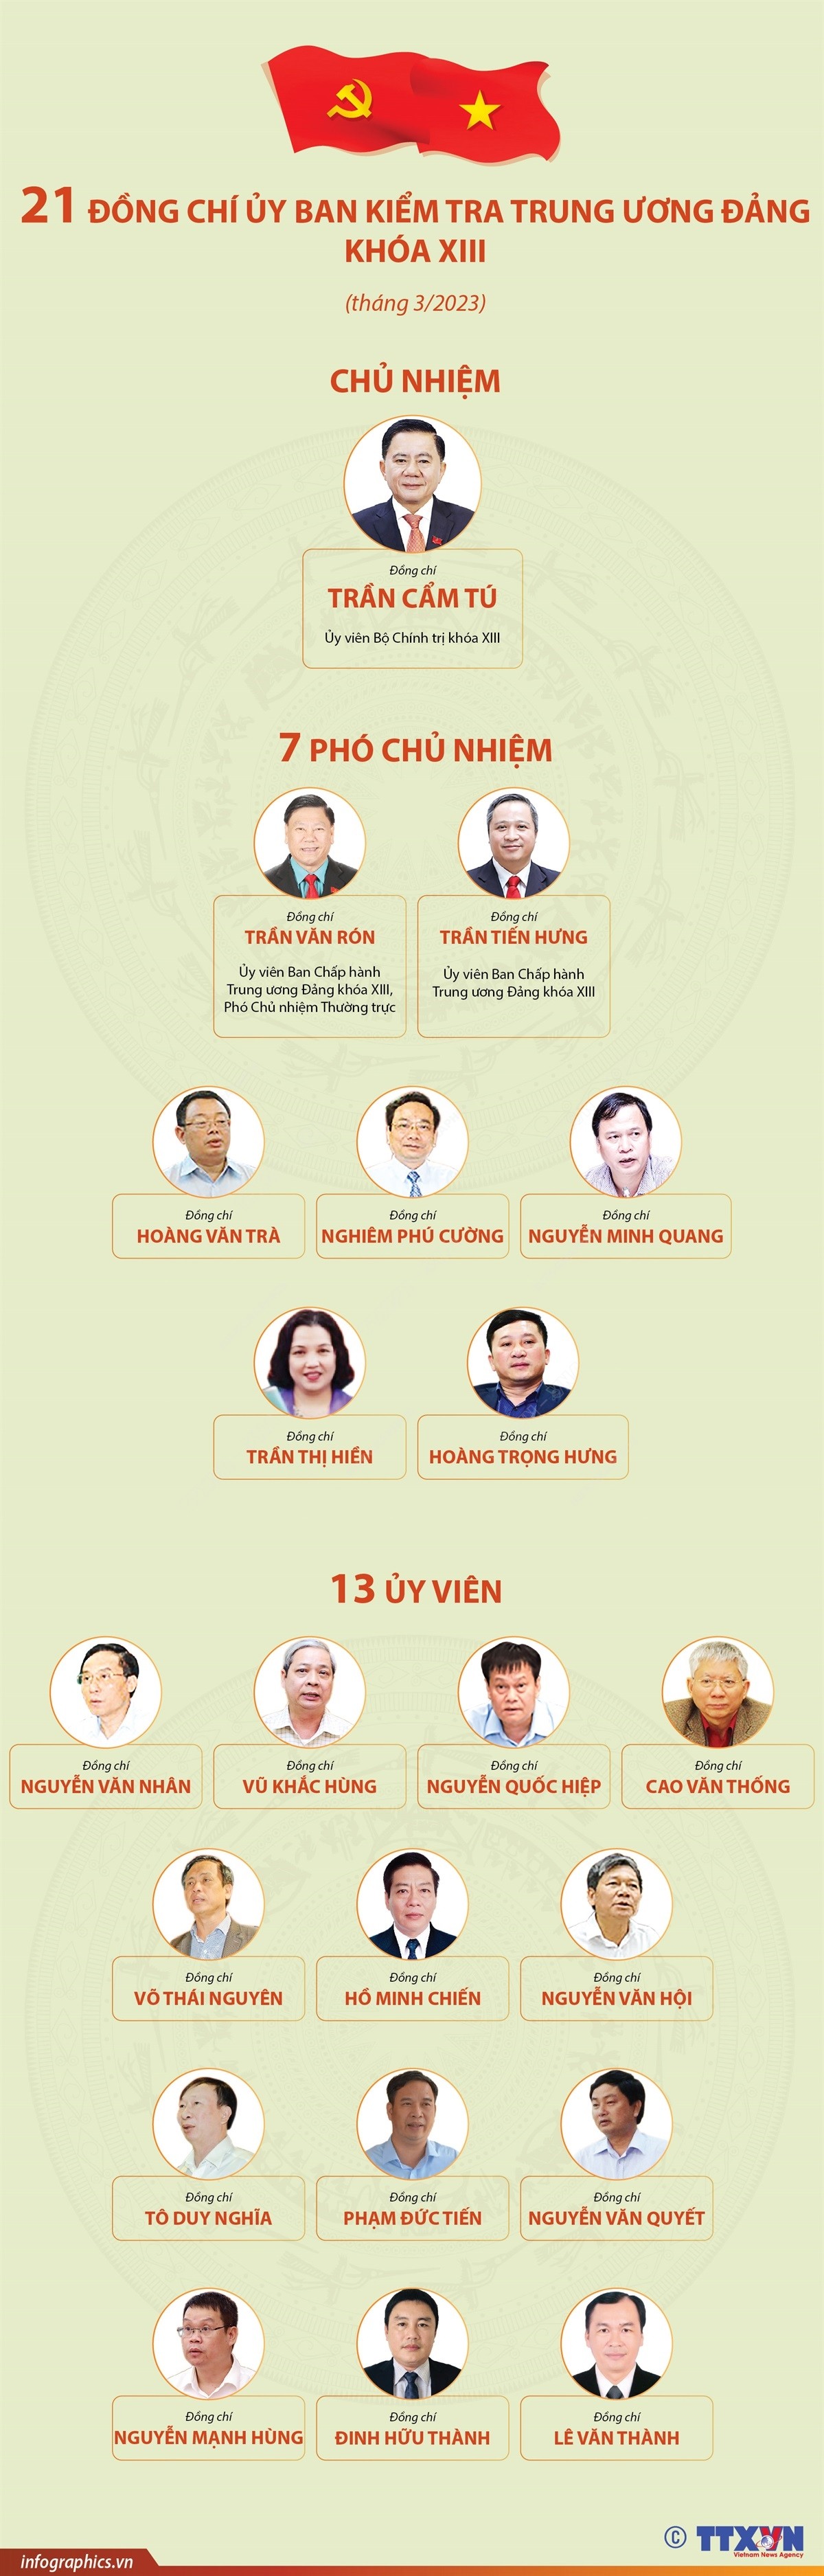 21 đồng chí trong Ủy ban Kiểm tra Trung ương Đảng khóa XIII (tháng 3/2023)